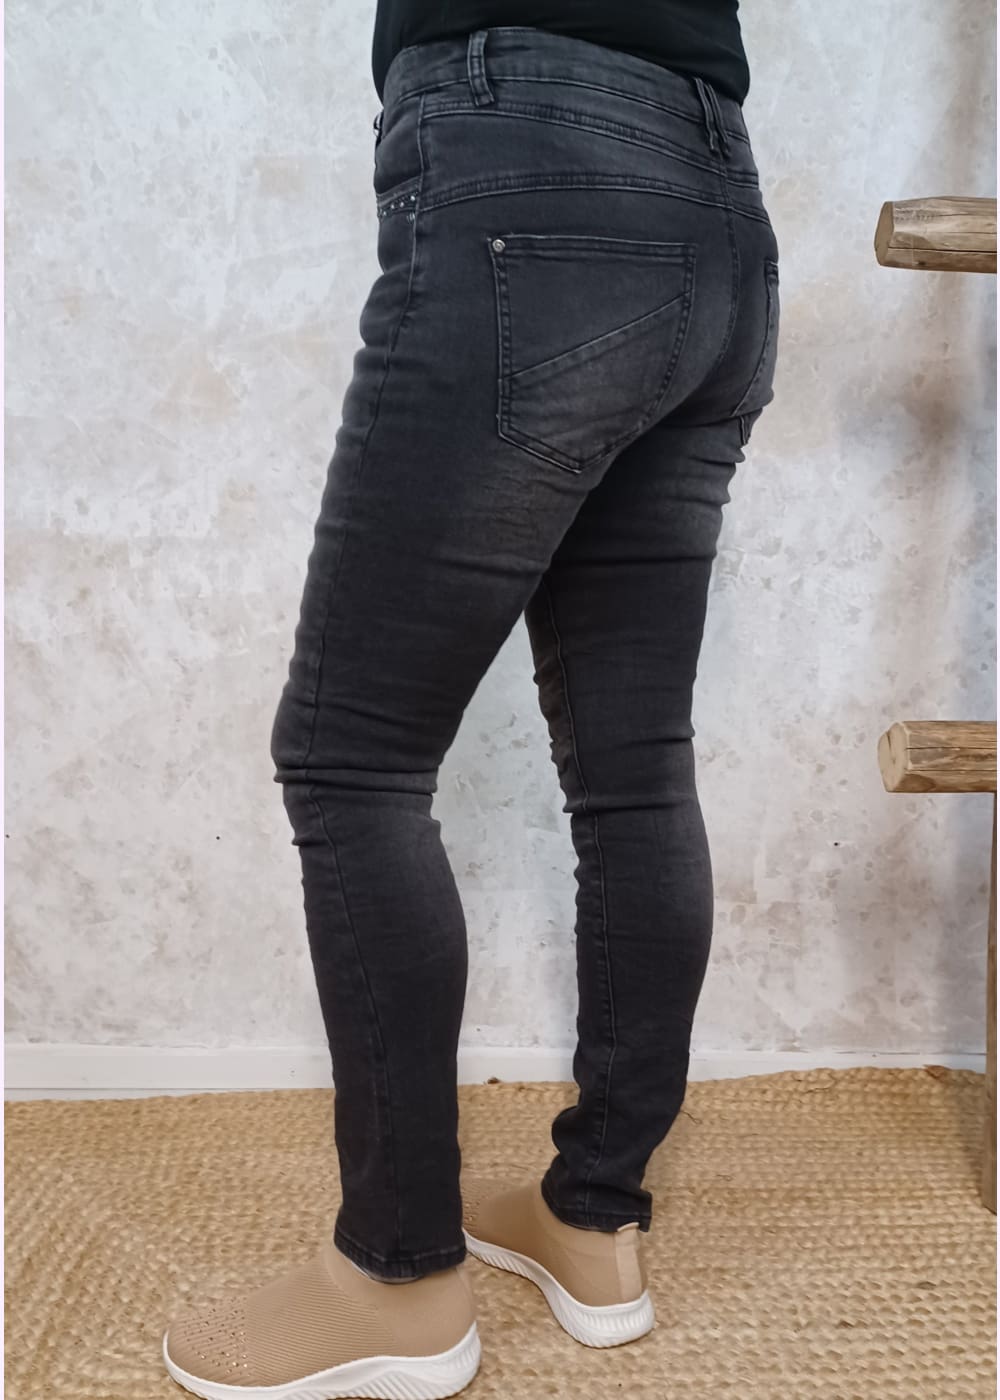 Farkku ash jeans capricollection - farkku